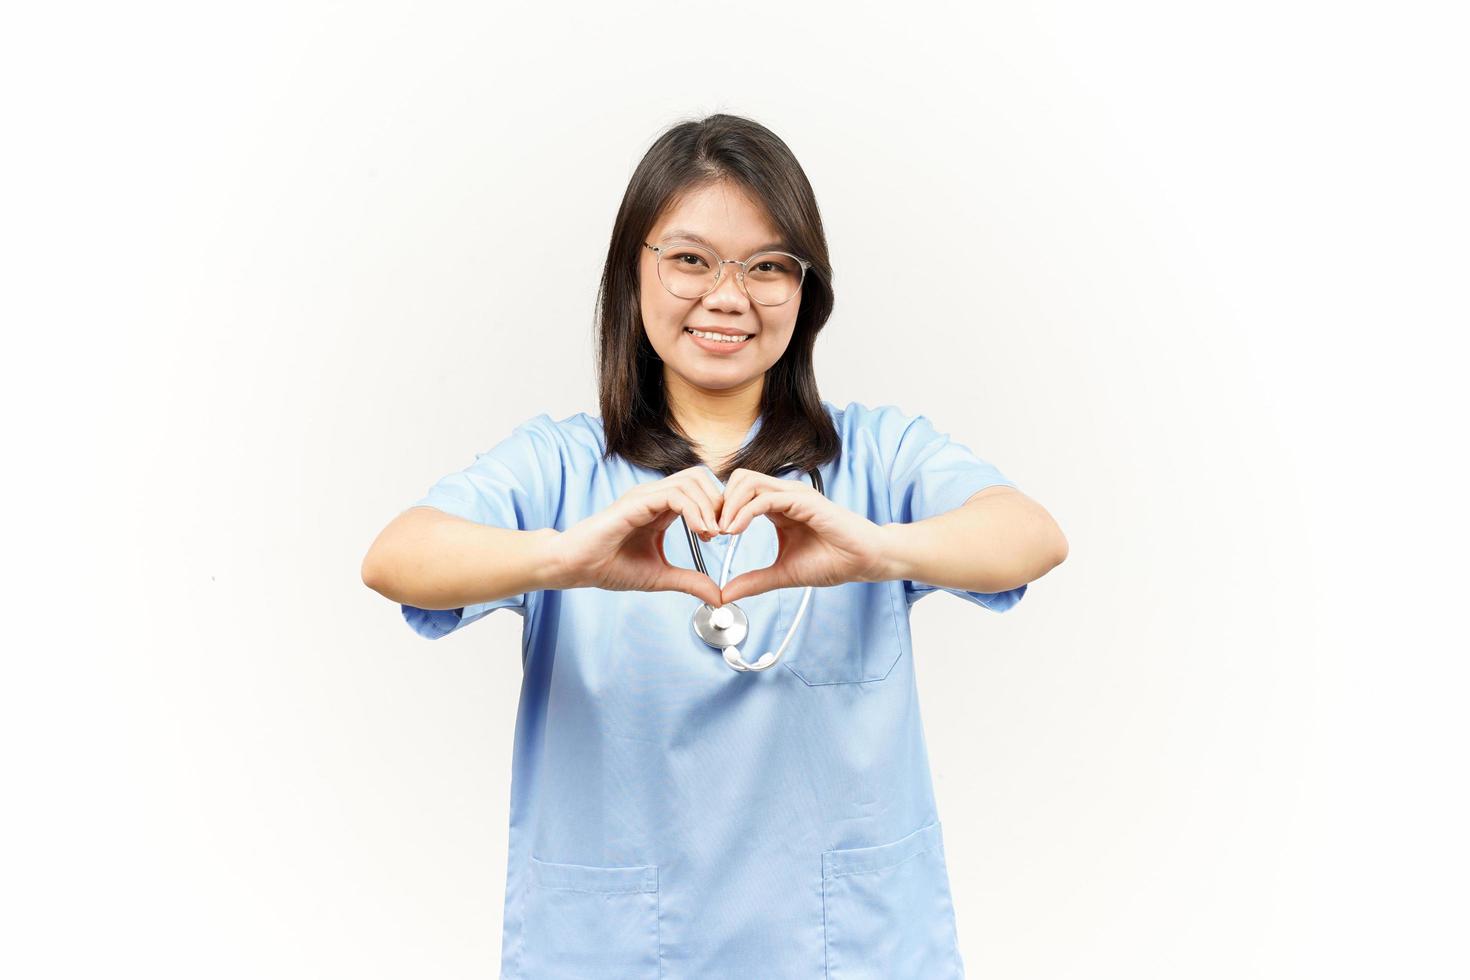 montrant l'amour ou cœur signe de asiatique Jeune médecin isolé sur blanc Contexte photo